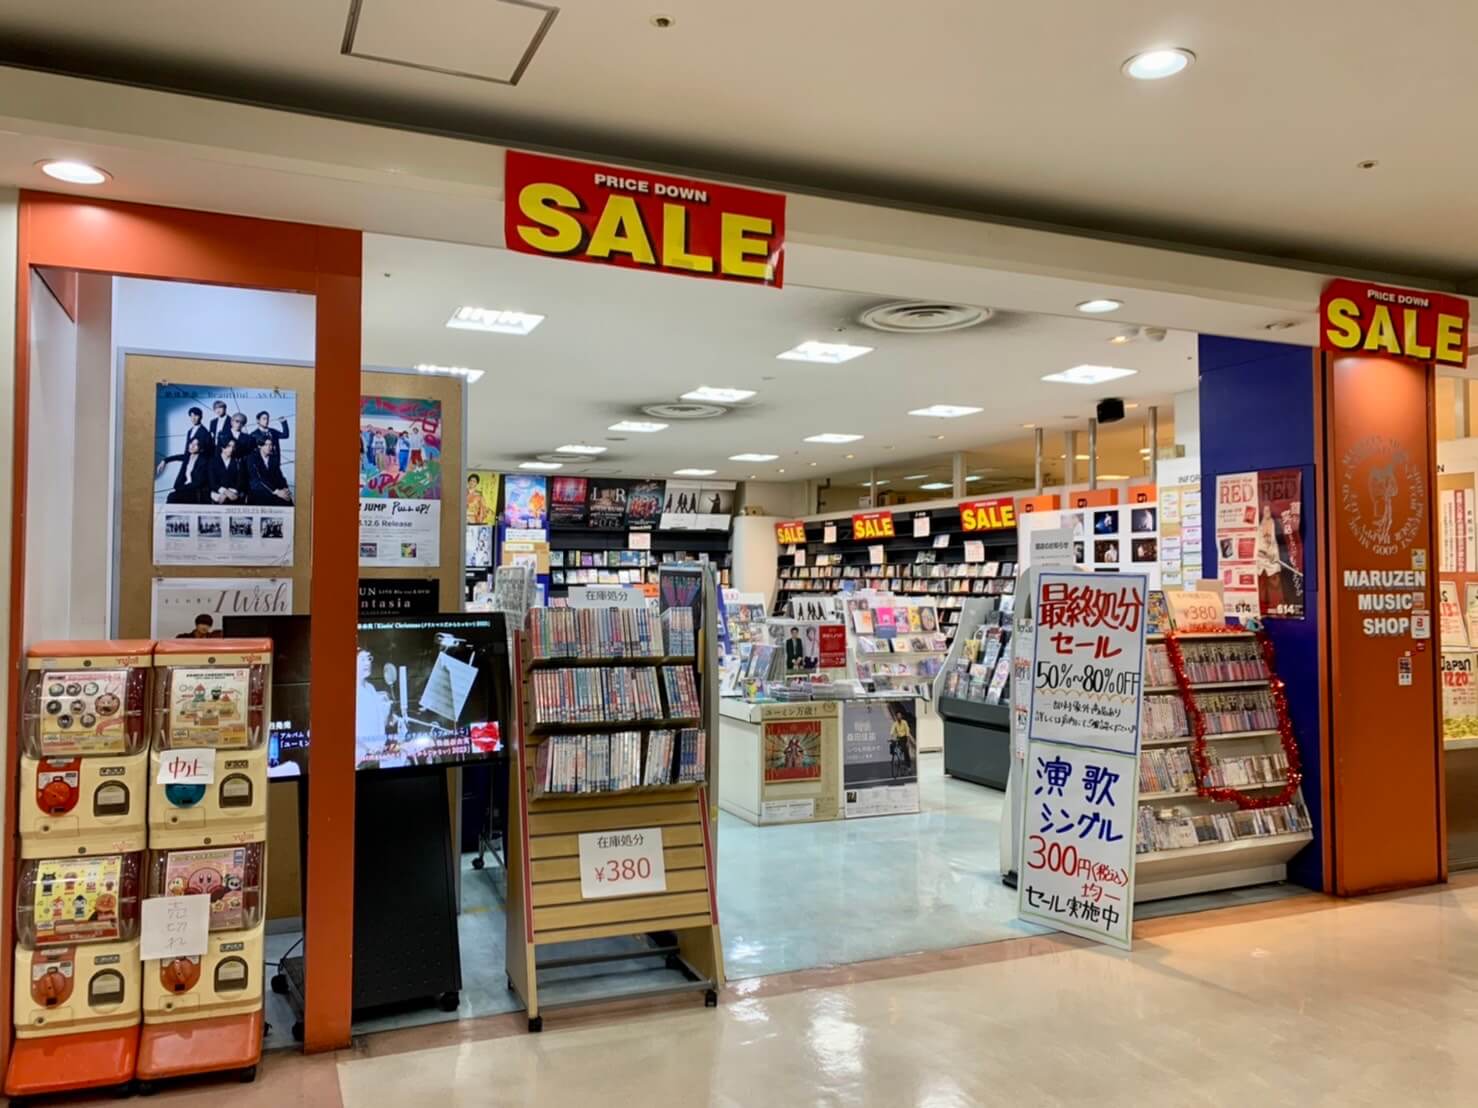 【閉店】堺市南区･光明池駅下車すぐ★サンピア本館2階の『マルゼン楽器店 サンピア店』が今月末で閉店されるみたいで寂しい…。：